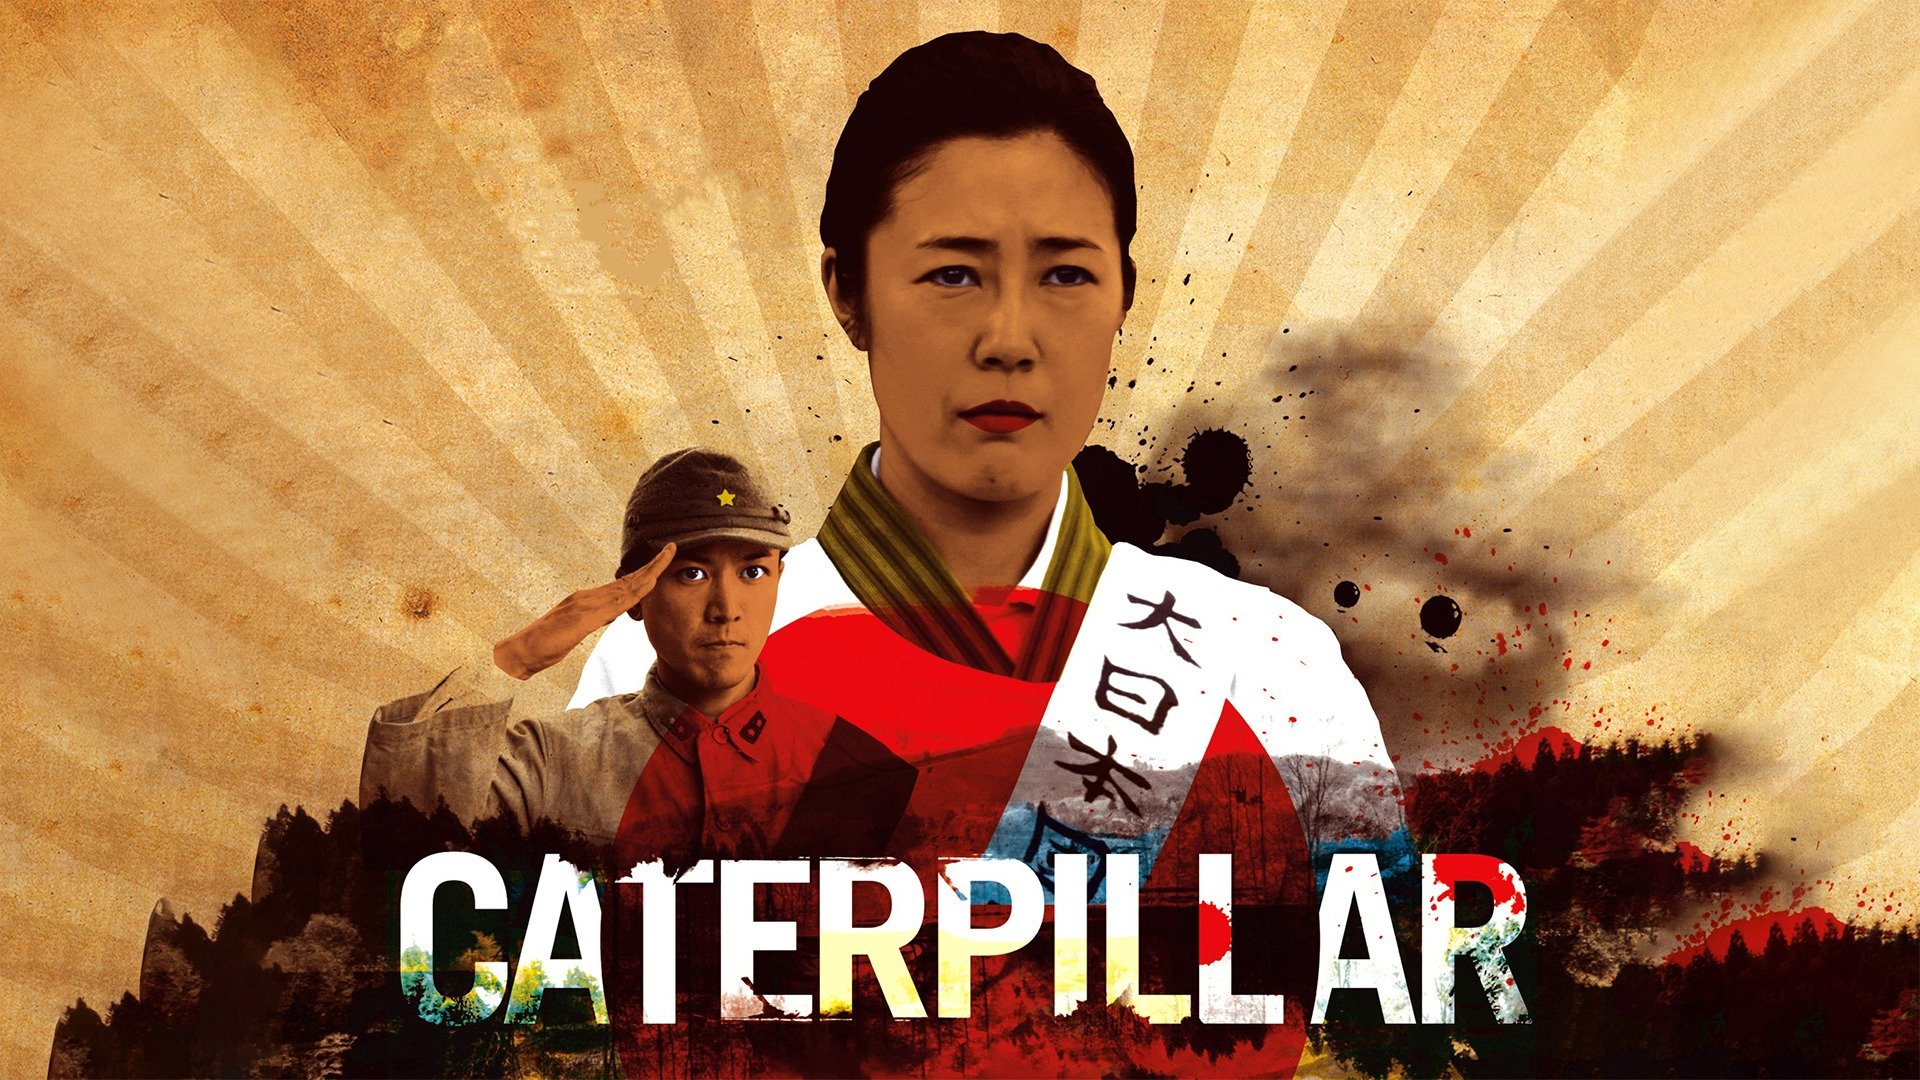 ดูหนัง ออนไลน์ Caterpillar (2010) เต็มเรื่อง